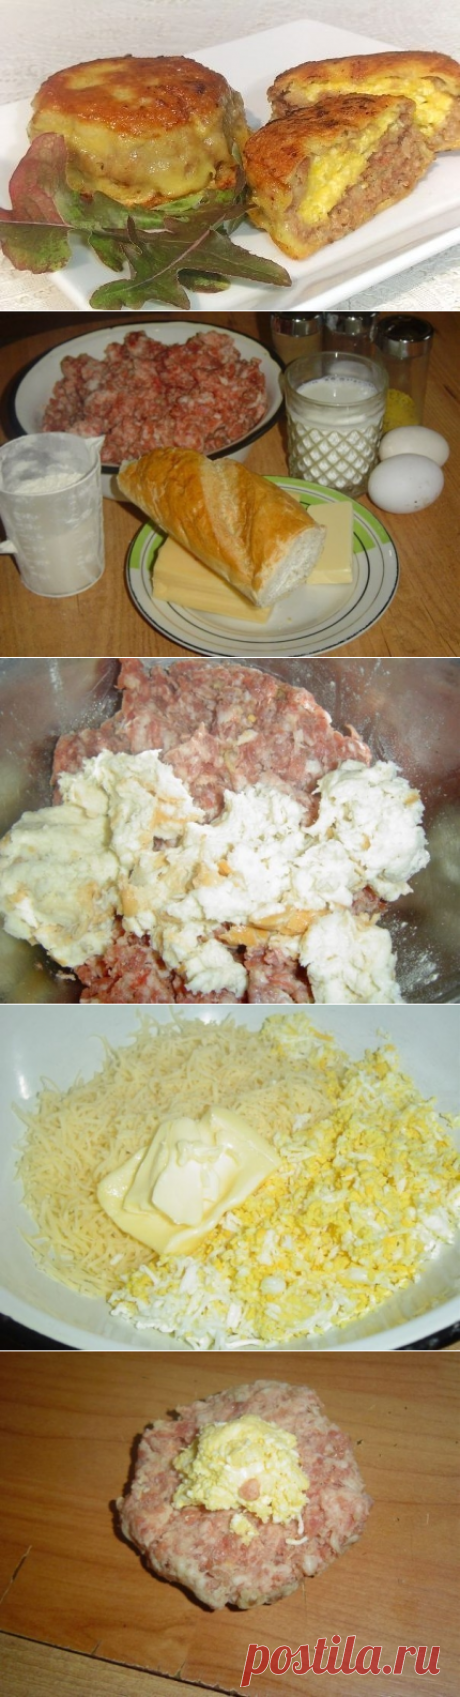 Как приготовить зразы с сырной начинкой. - рецепт, ингридиенты и фотографии